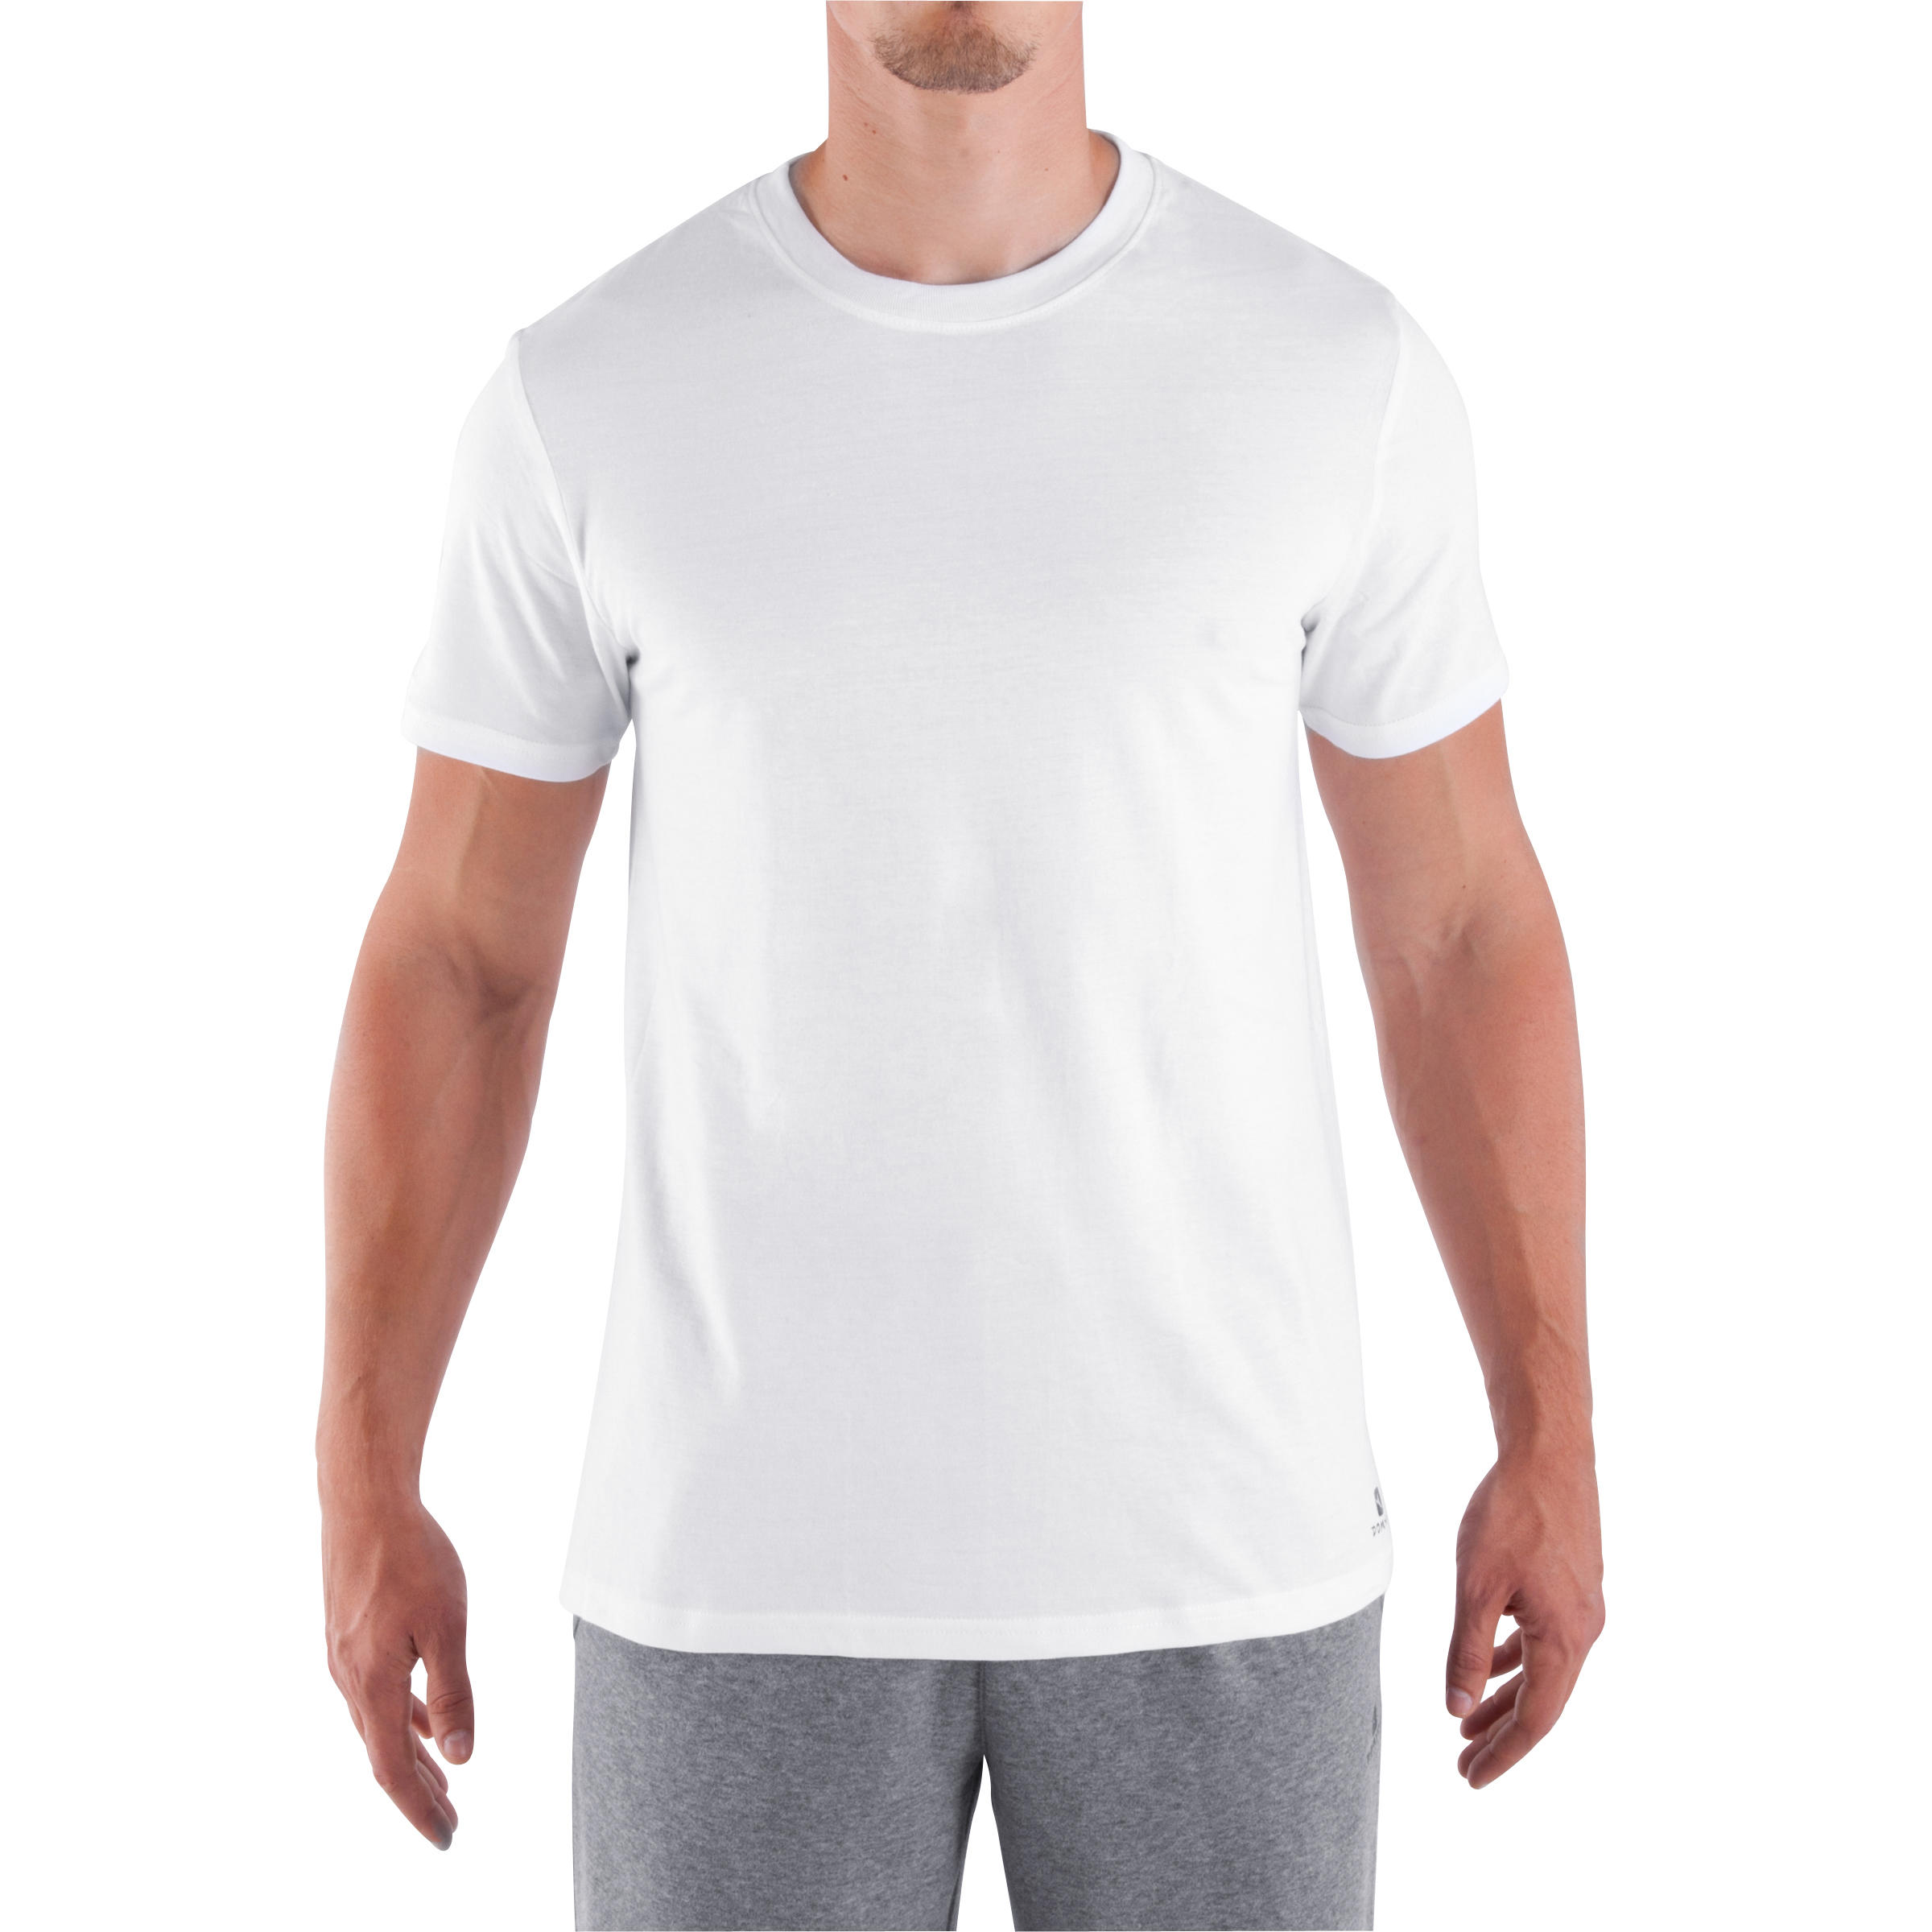 decathlon gym t shirts